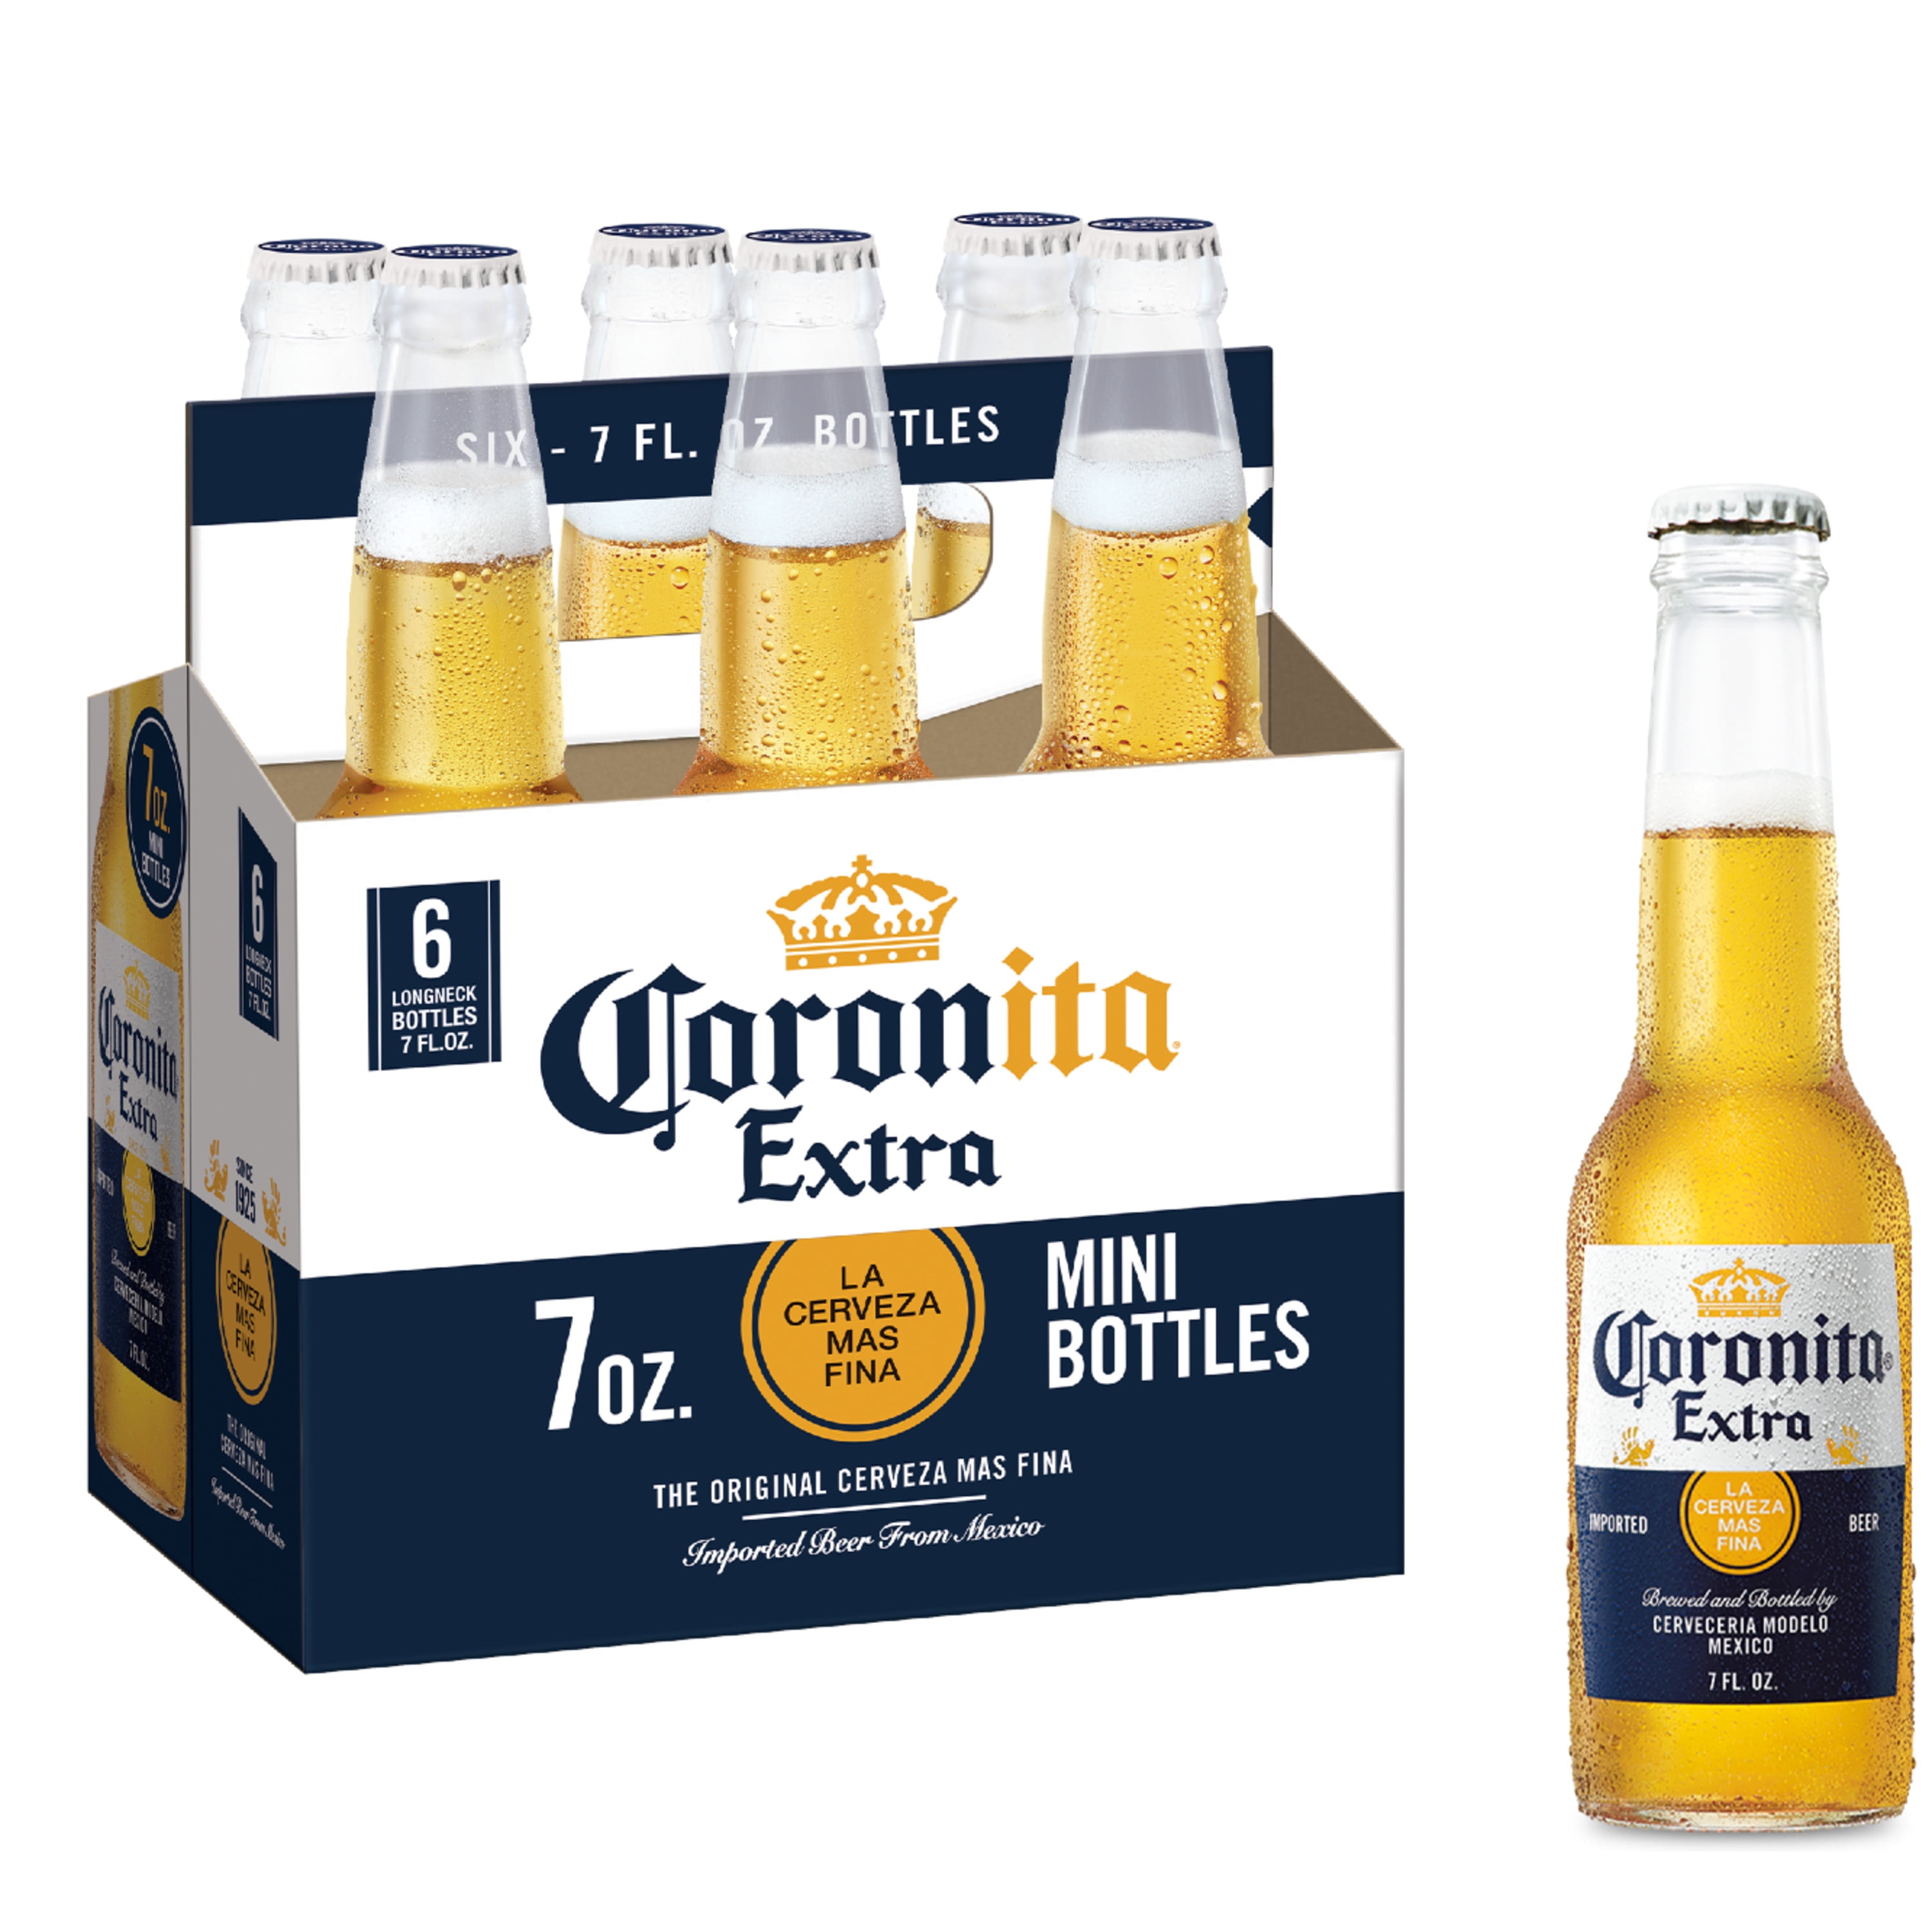 paño Desmenuzar reacción Corona Extra Coronita Lager Mexican Beer, 6 Pack Beer, 7 fl oz Mini  Bottles, 4.6% ABV - Walmart.com